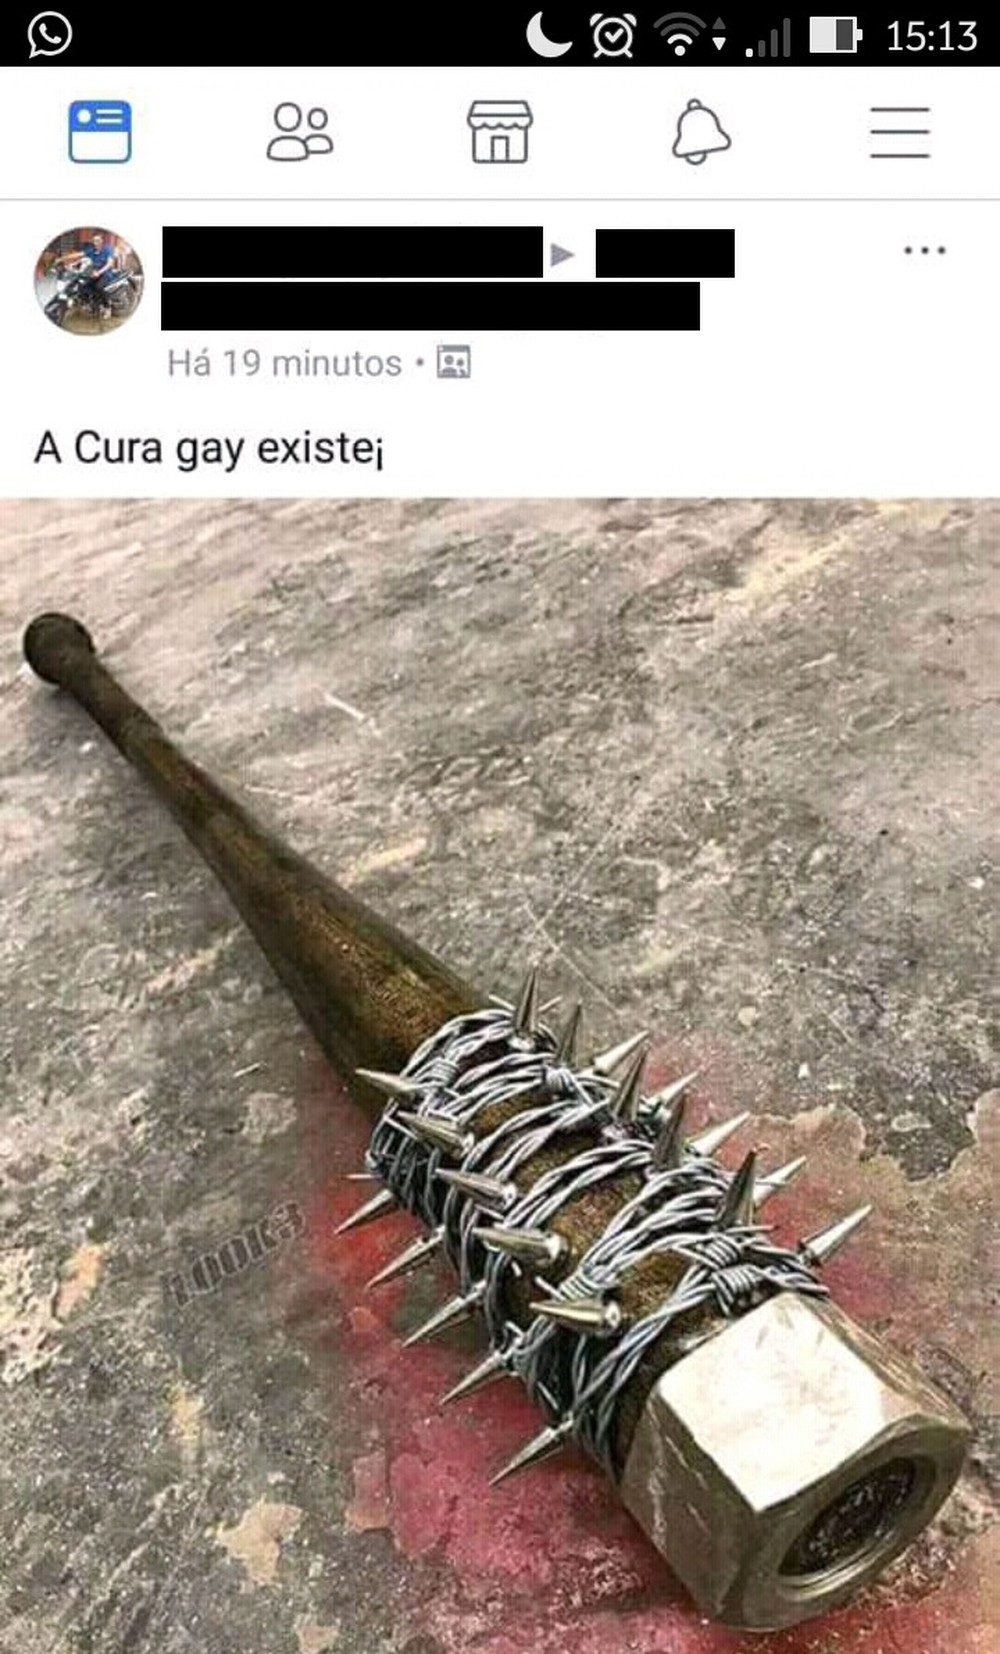 Servidor Temporário do IBGE posta foto de arma de série como solução para cura gay